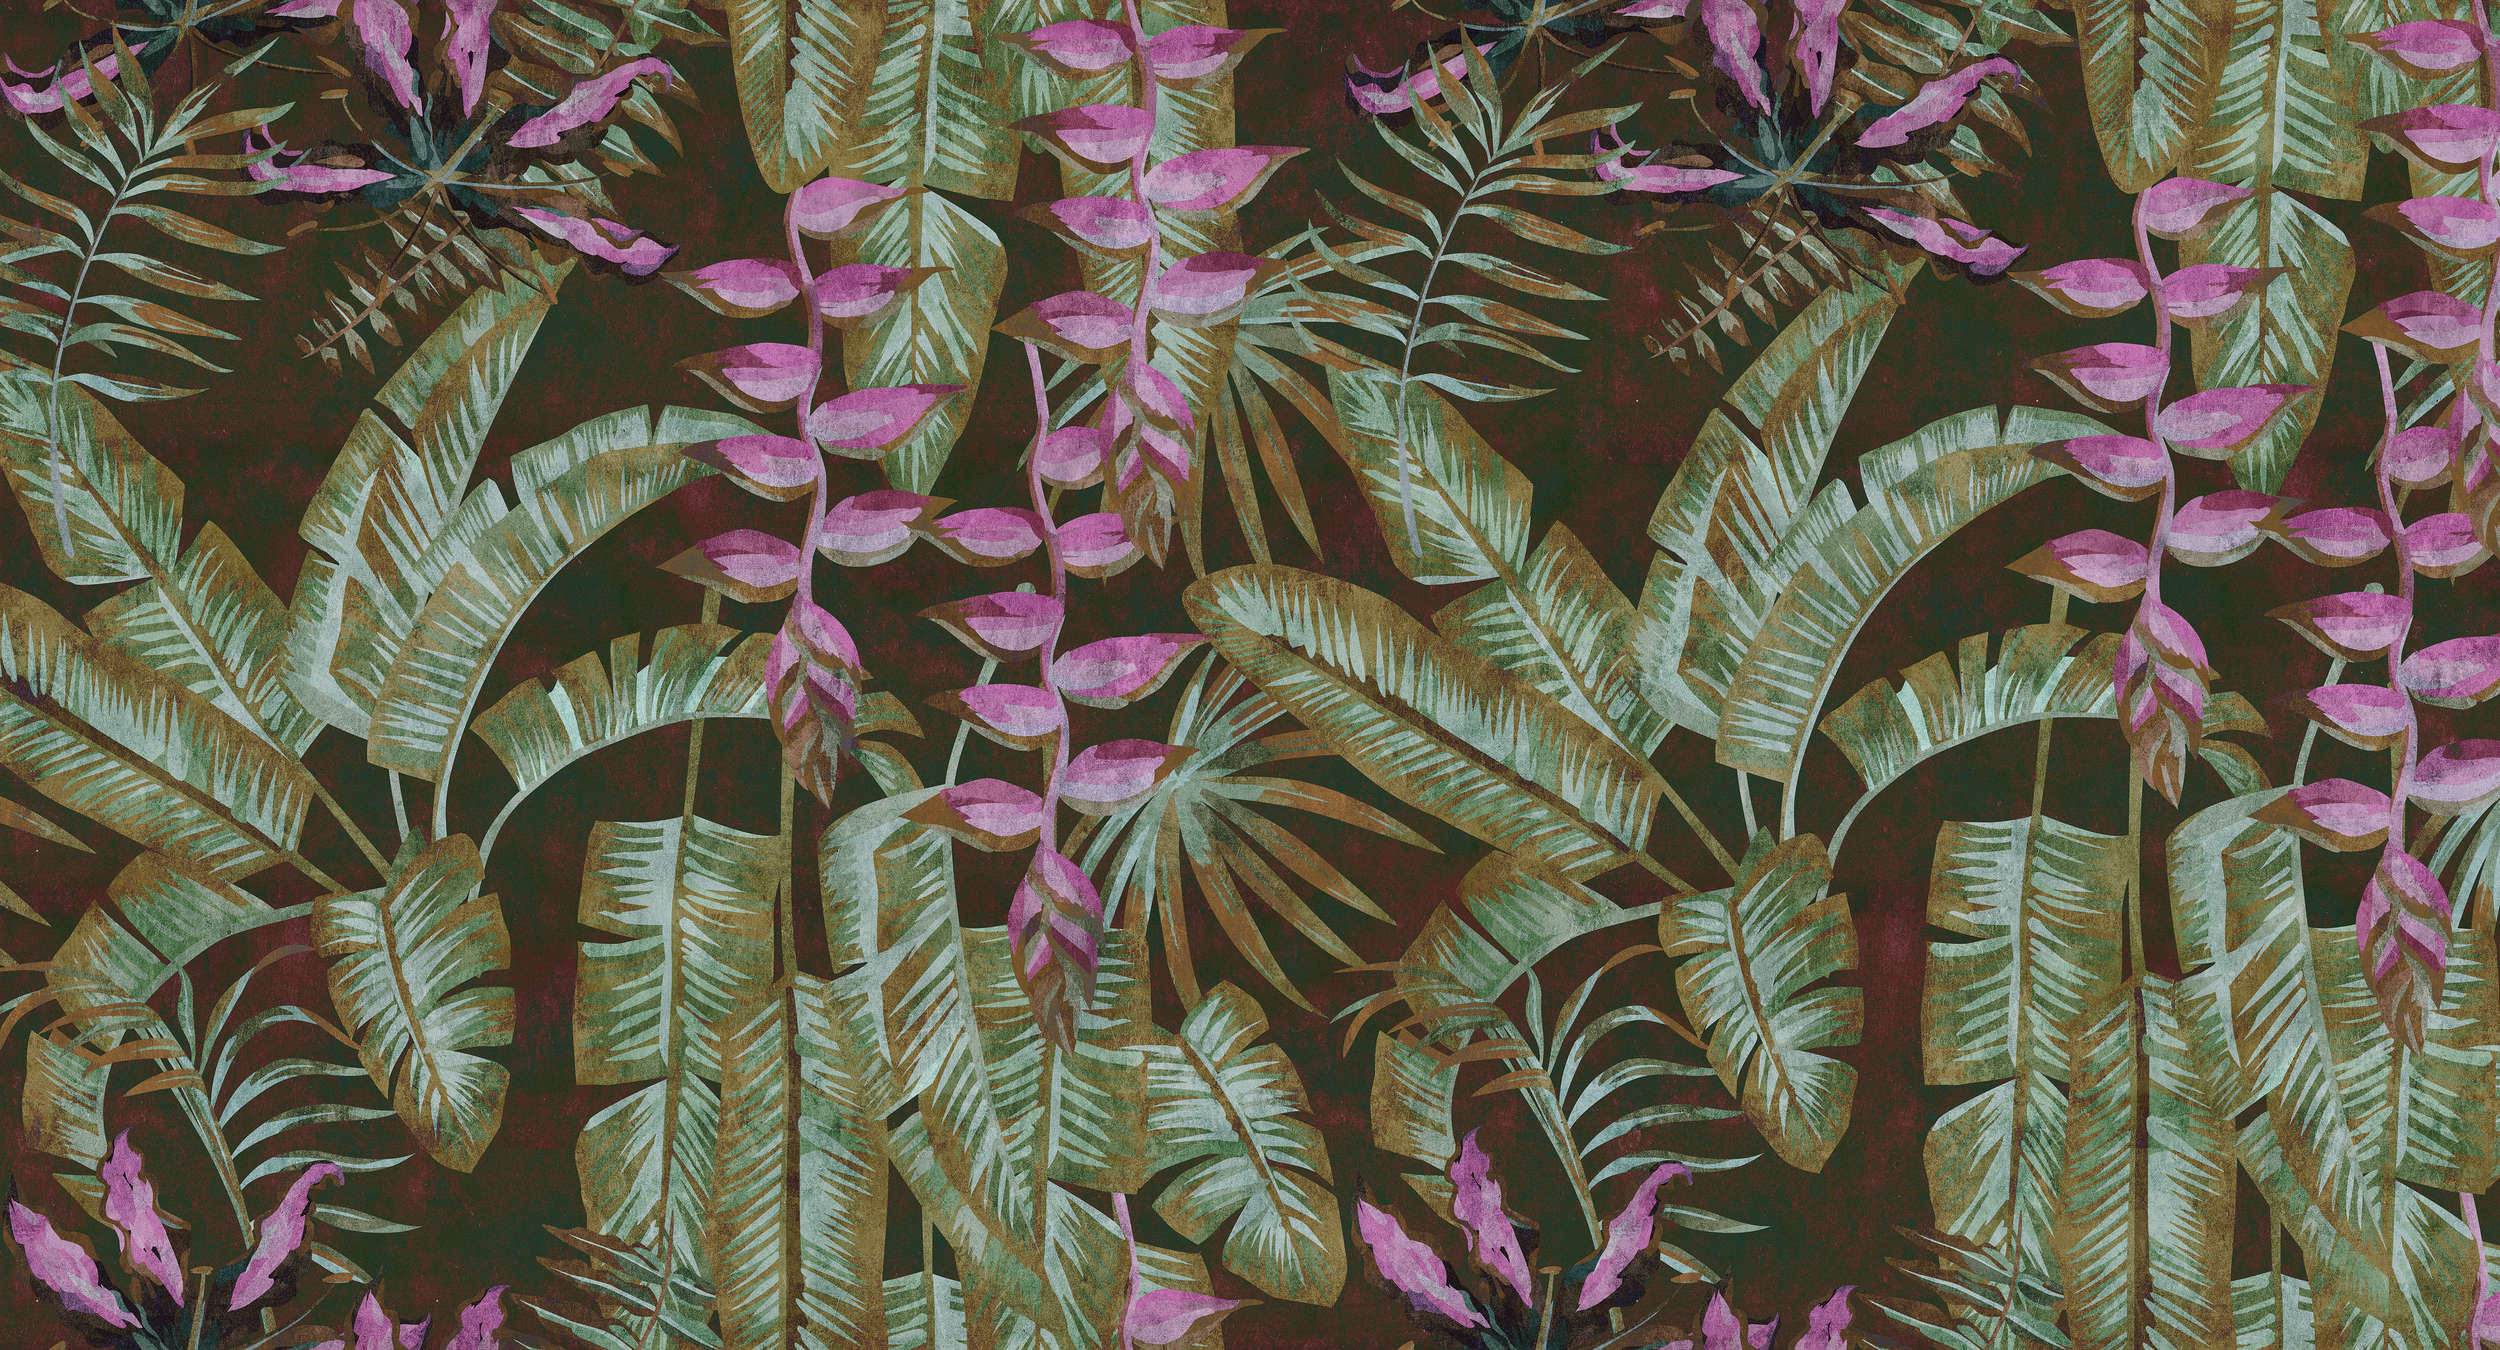             Tropicana 1 - Dschungel Fototapete mit Bananenblättern & Farnen-Löschpapier Struktur – Grün, Violett | Premium Glattvlies
        